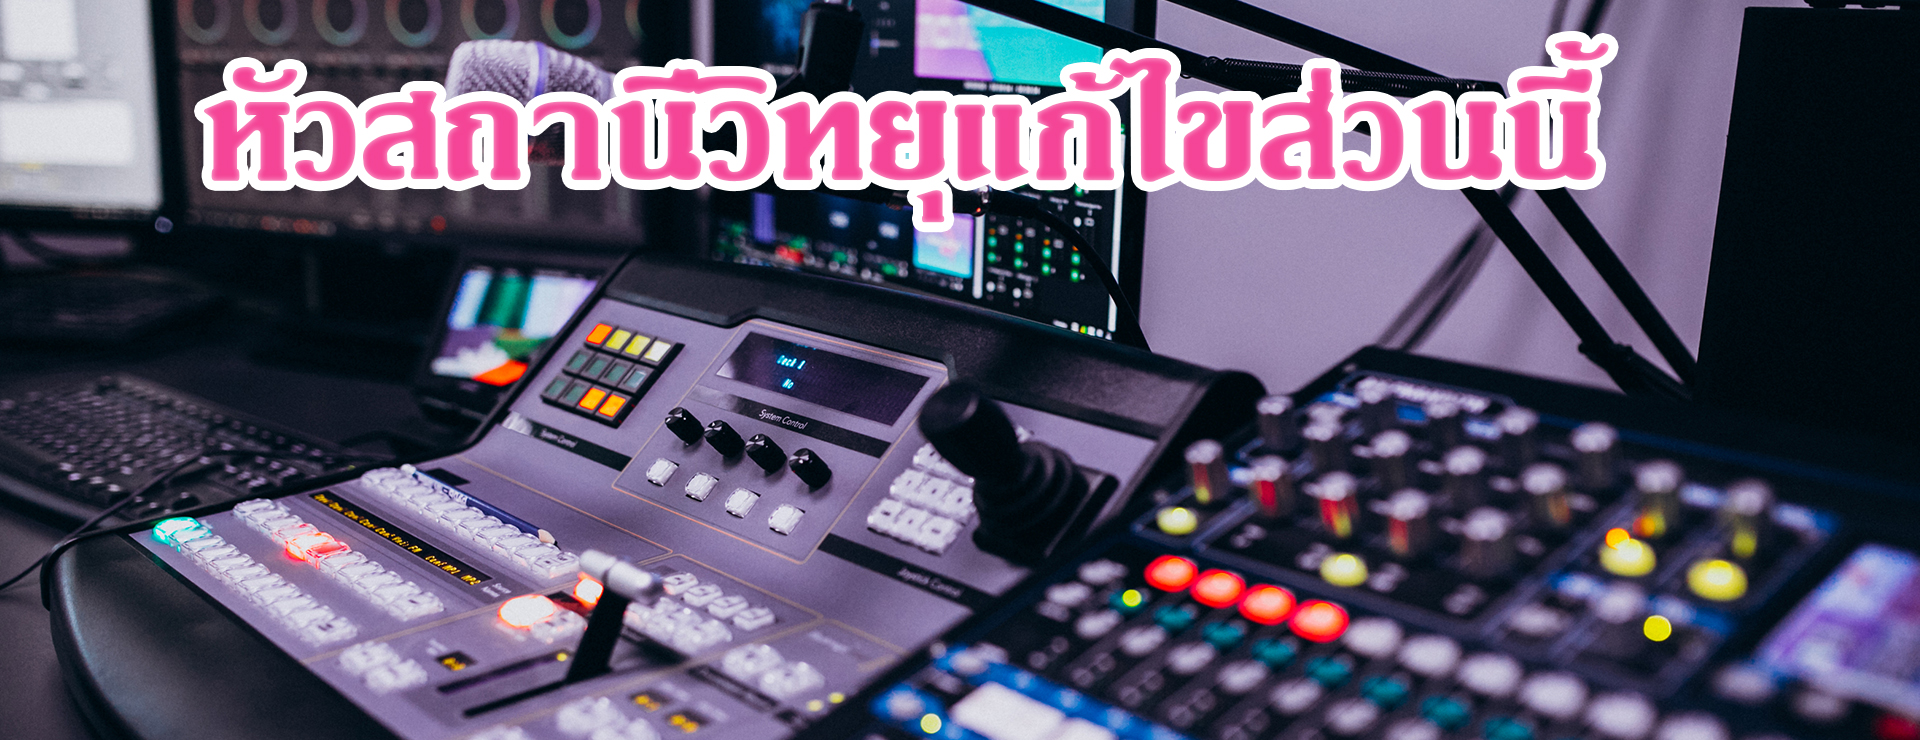 สถานีวิทยุเคทีไทย FM.106 MHz. จังหวัดชลบุรี